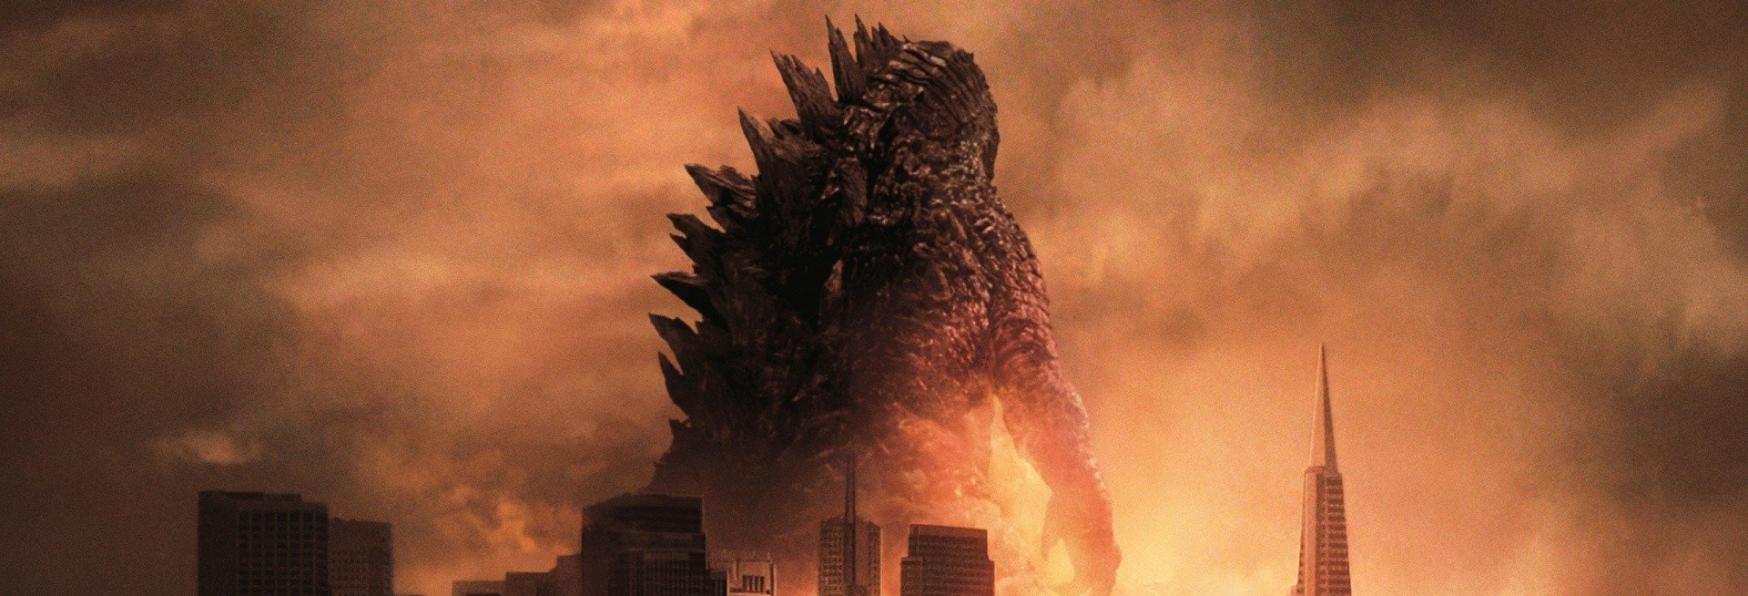 Godzilla: la Descrizione svela Quando sarà Ambientata la Serie TV Live-Action